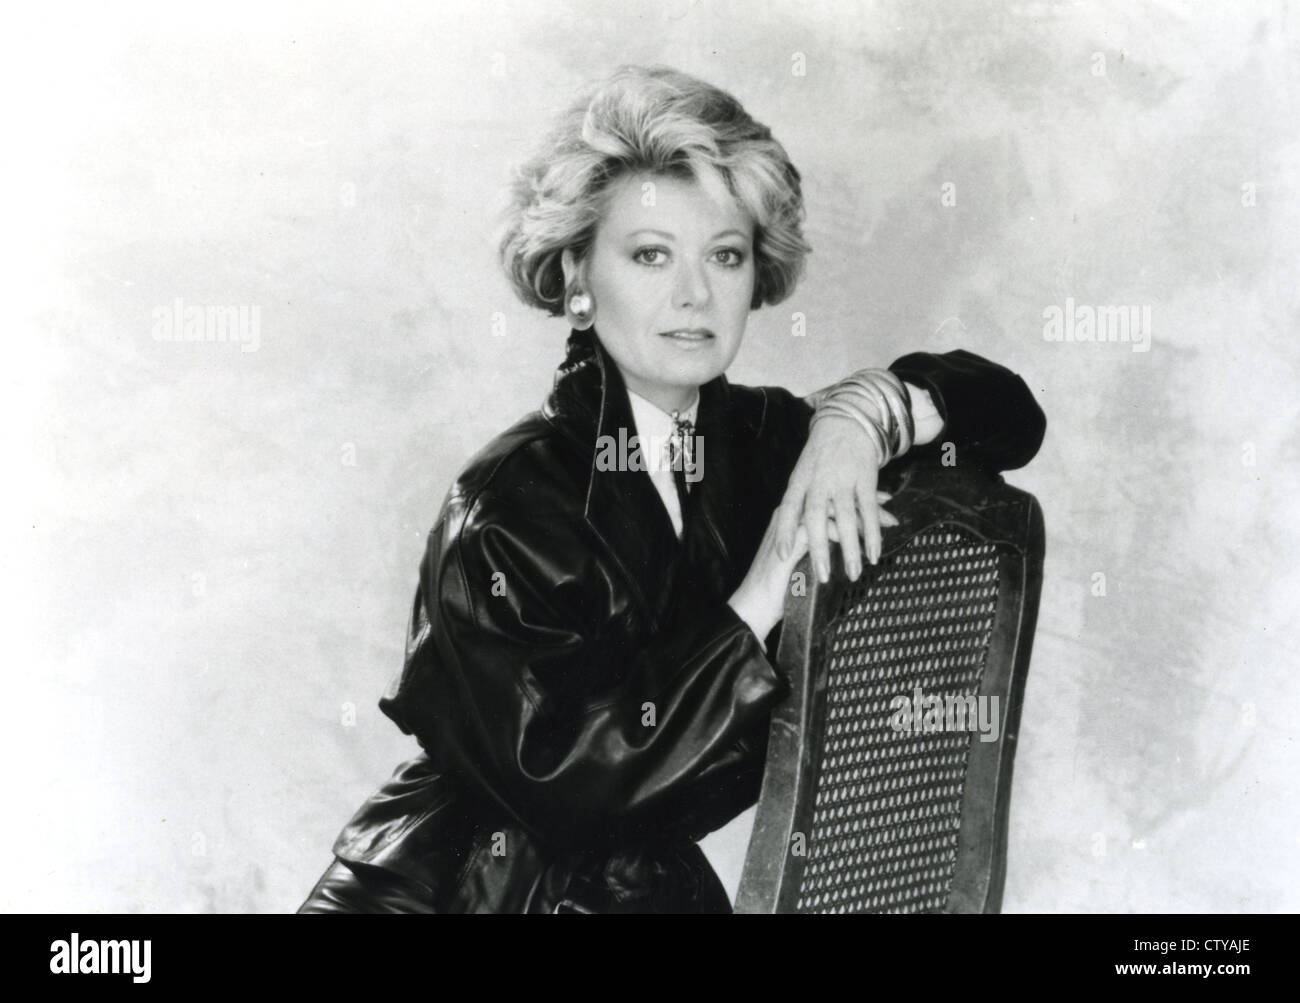 ELAINE PAIGE foto promozionale del Regno Unito la cantante e attrice circa 1985 Foto Stock